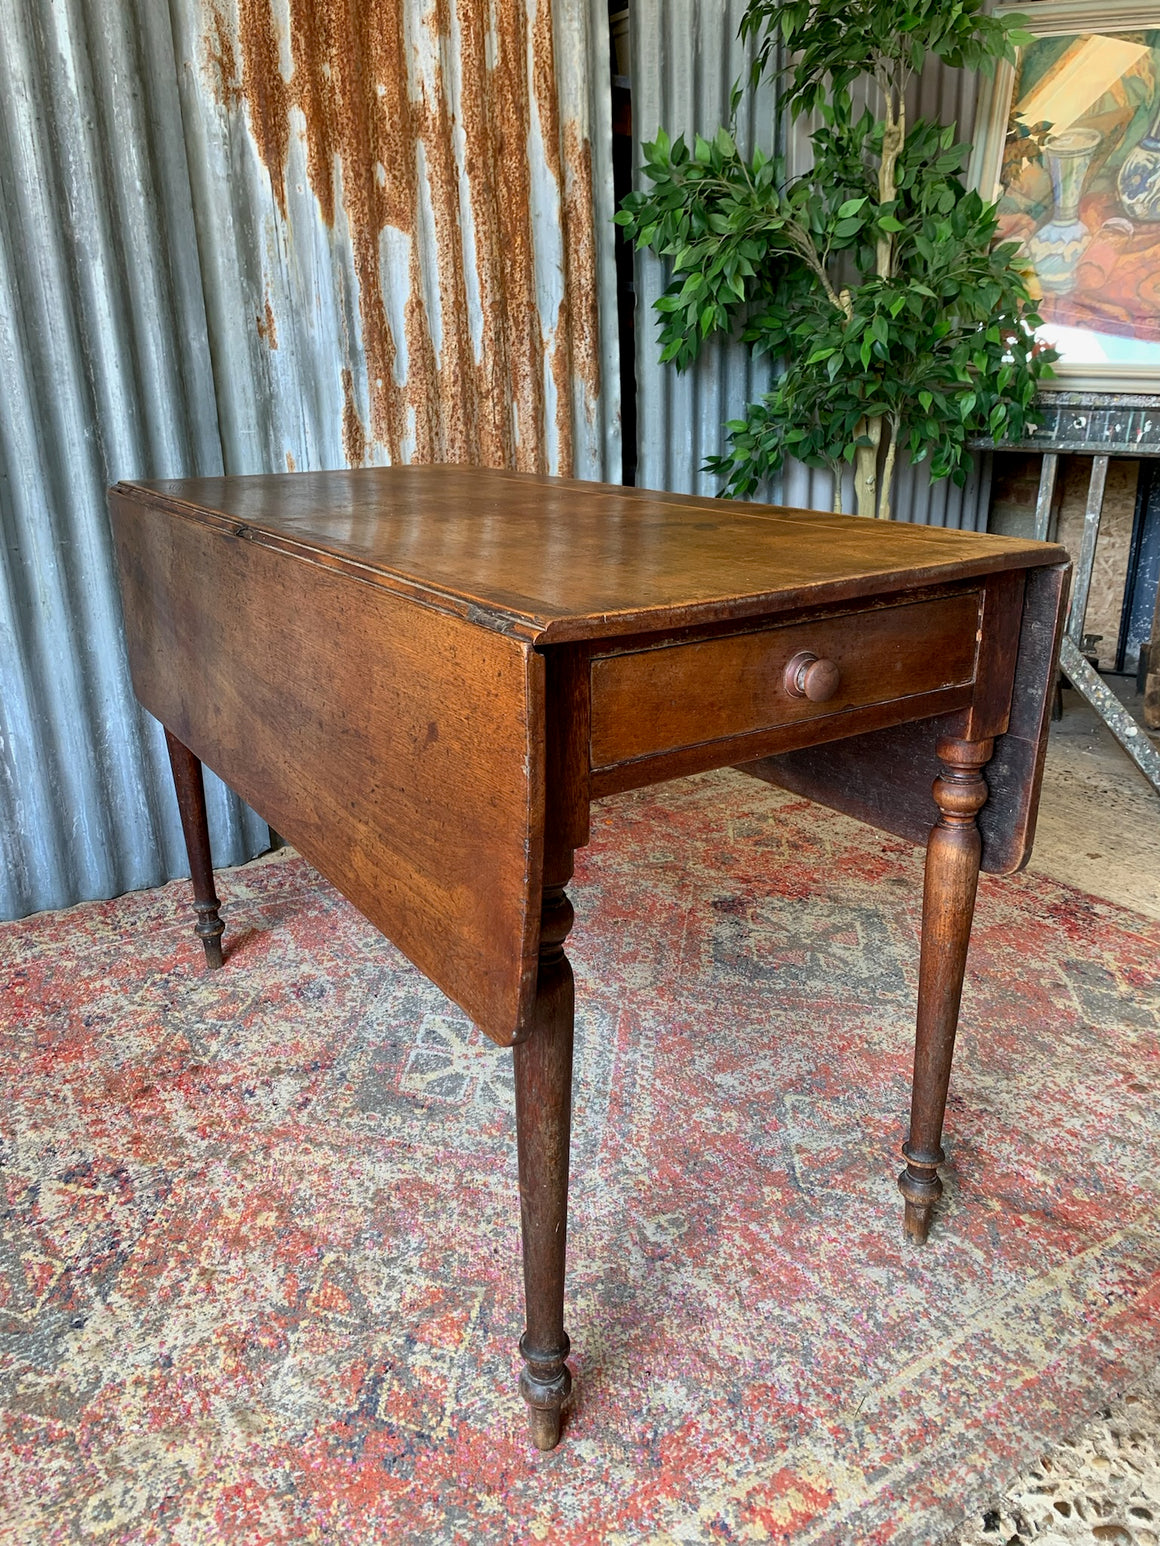 A Pembroke table